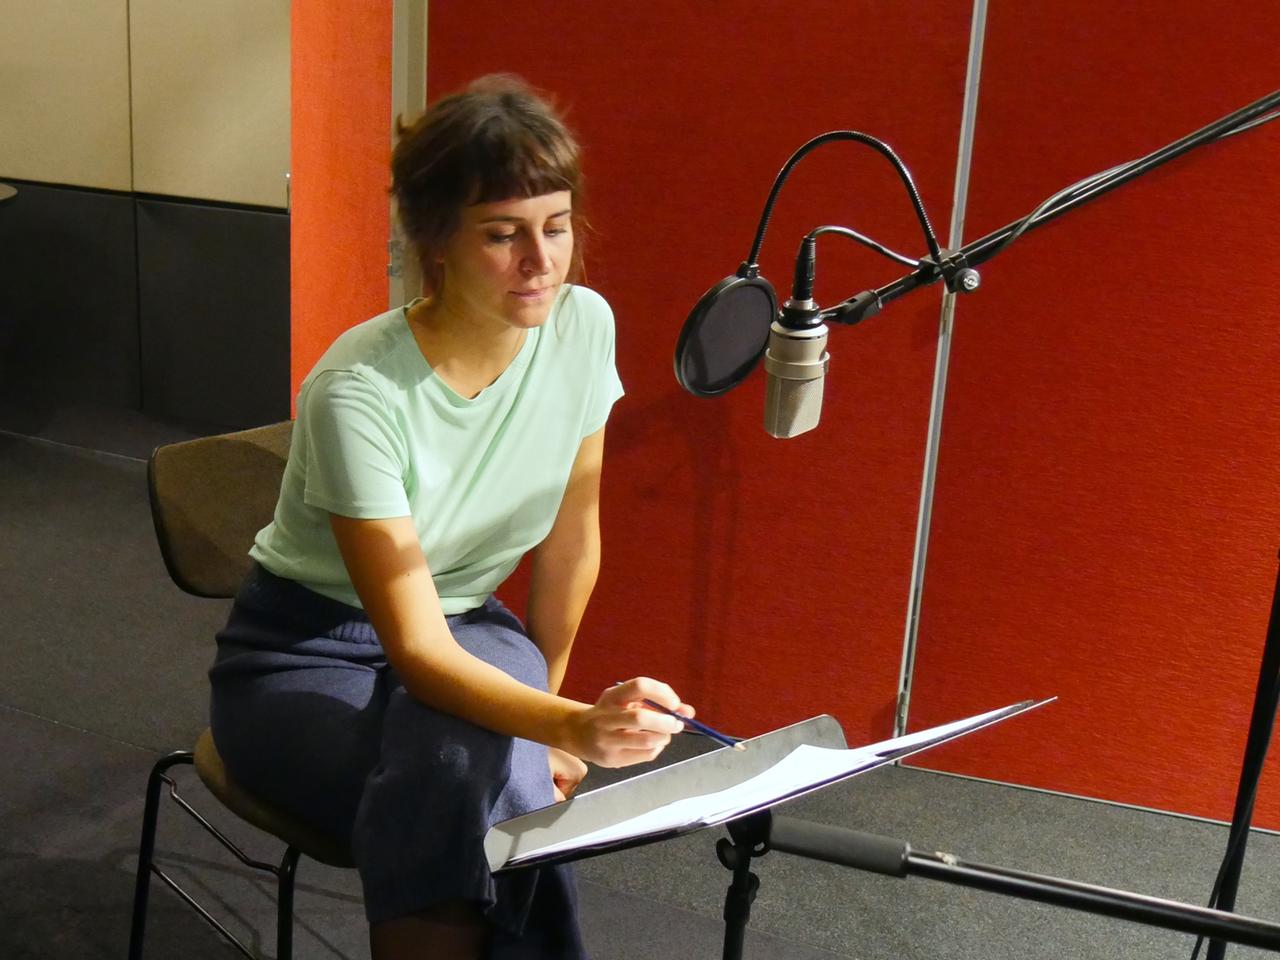 Schauspielerin Florentine Krafft bei den Aufnahmen für das Hörspiel "Die vielen Stimmen meines Bruders".